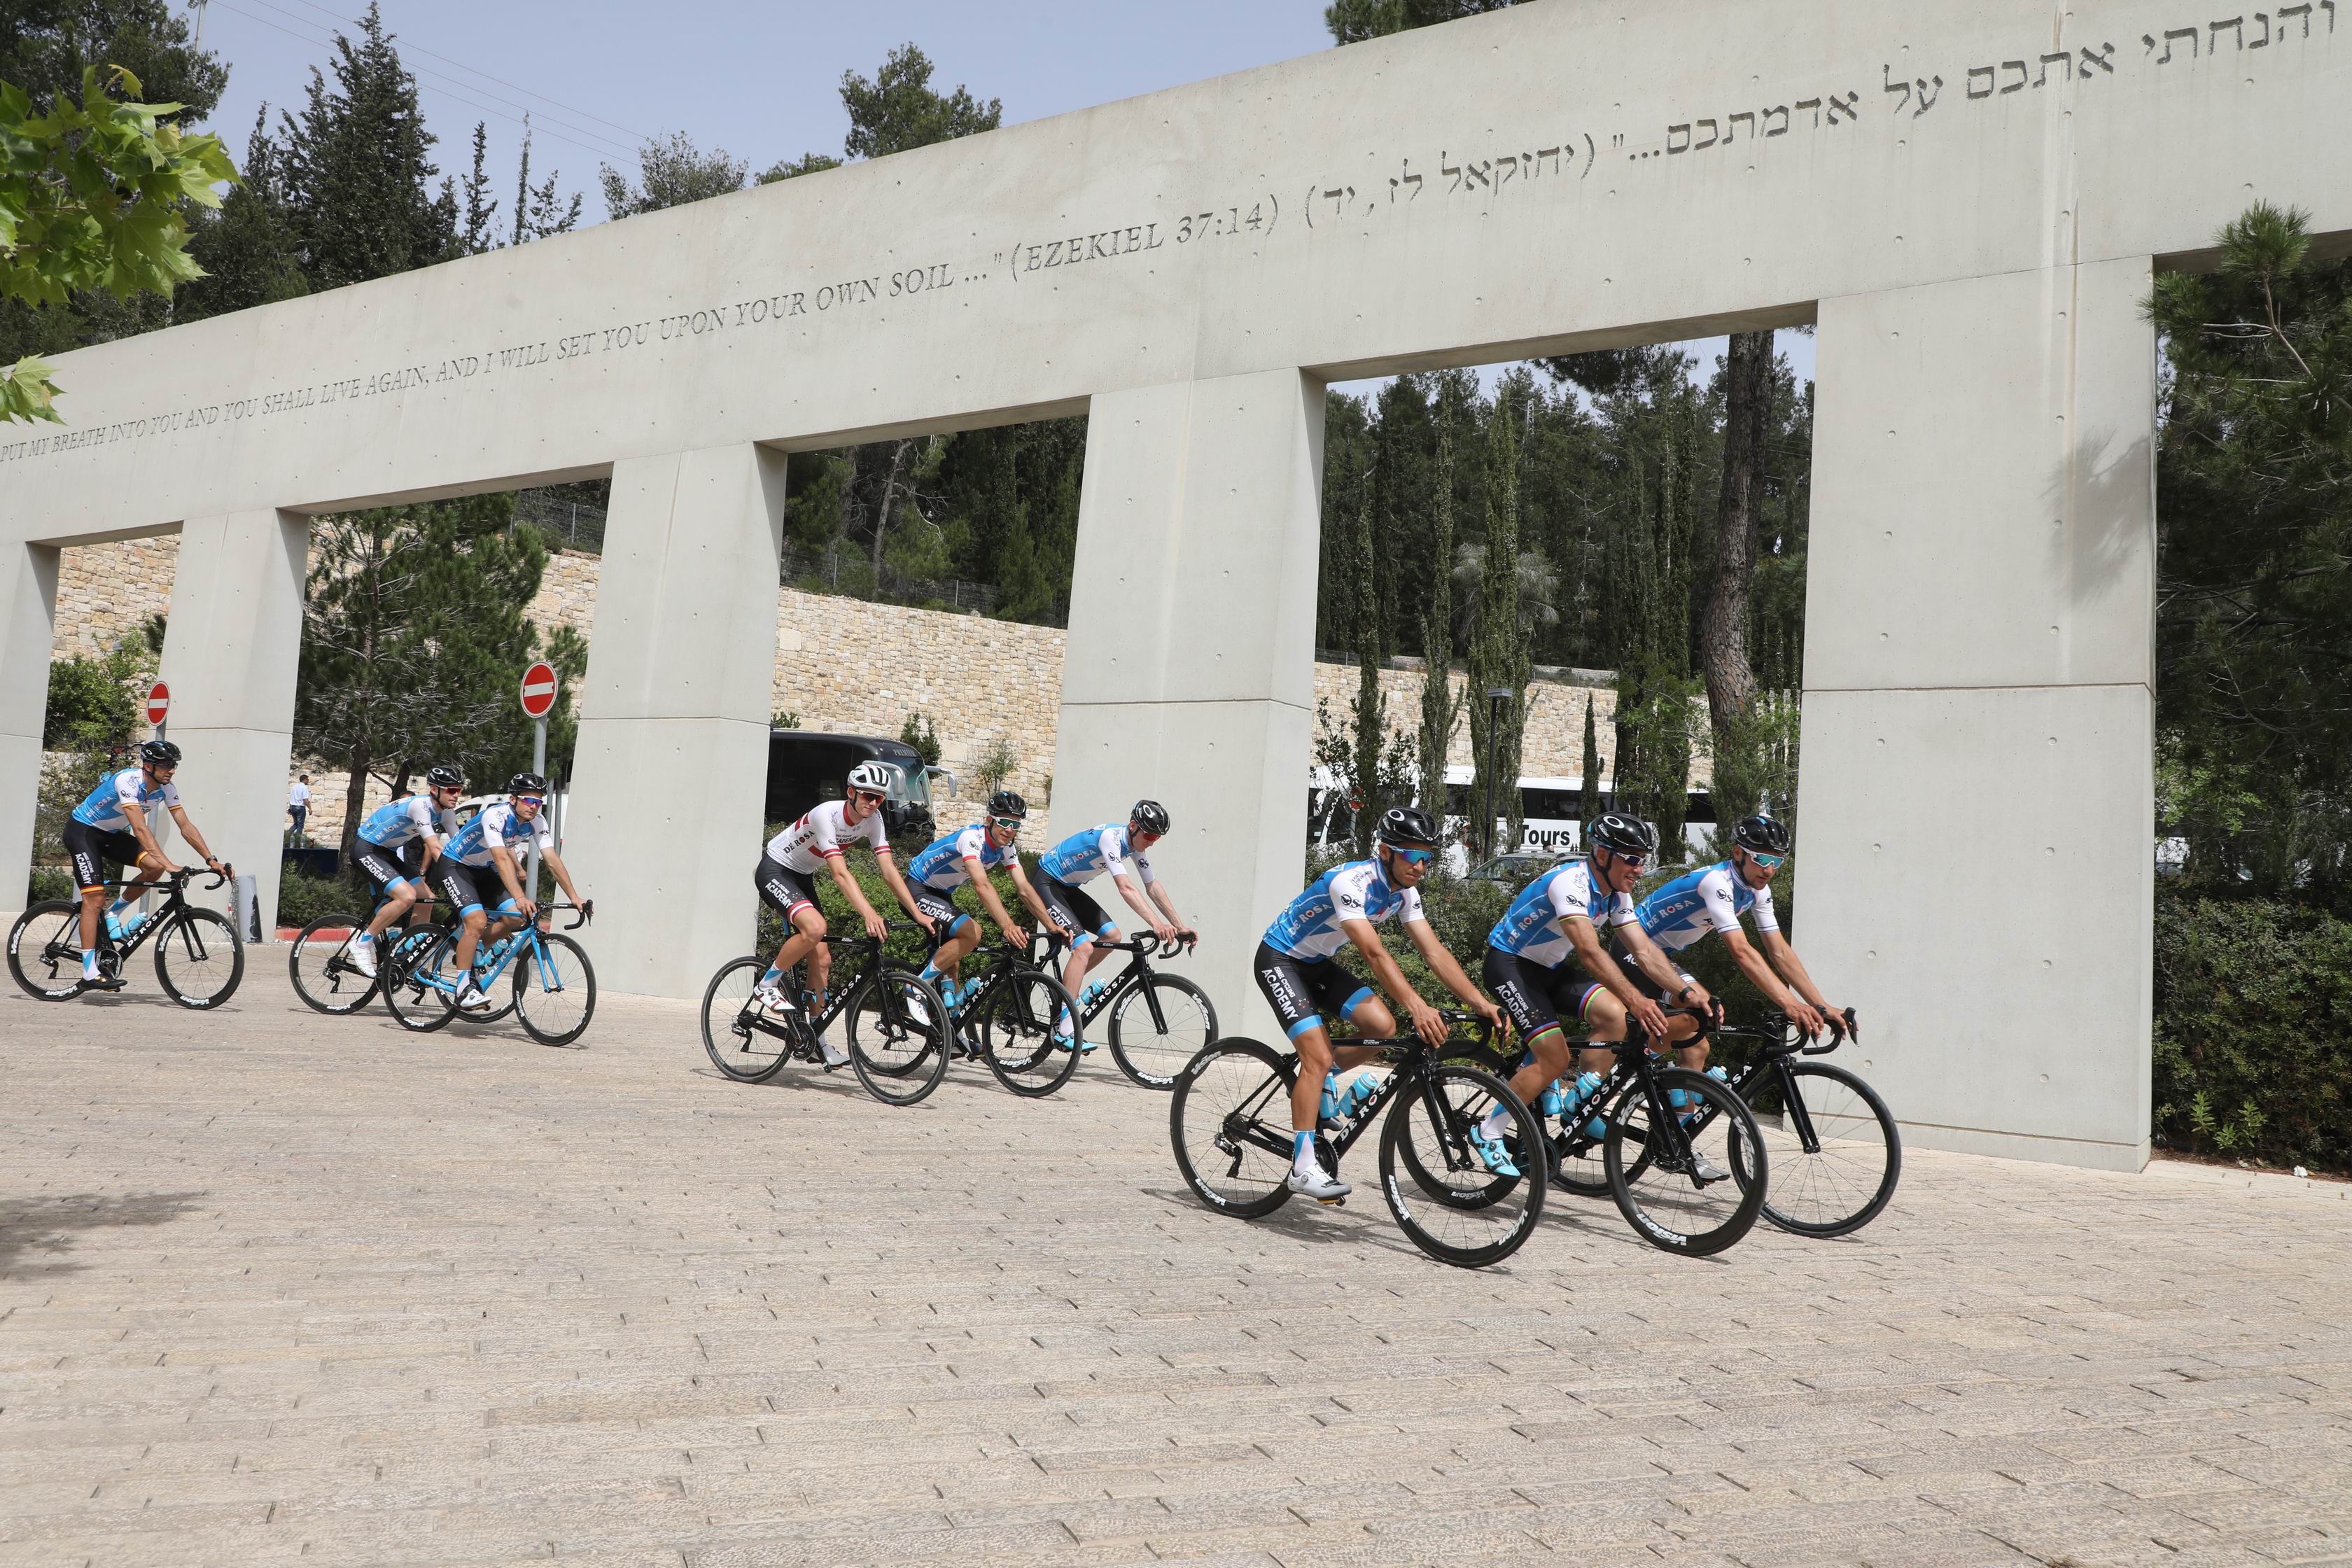 רוכבי האופניים מתחילים את רכיבת הזיכרון, בהובלת נשיא הכבוד של ה"ביג סטארט ישראל" של הג'ירו ד'איטליה סילבן אדמס